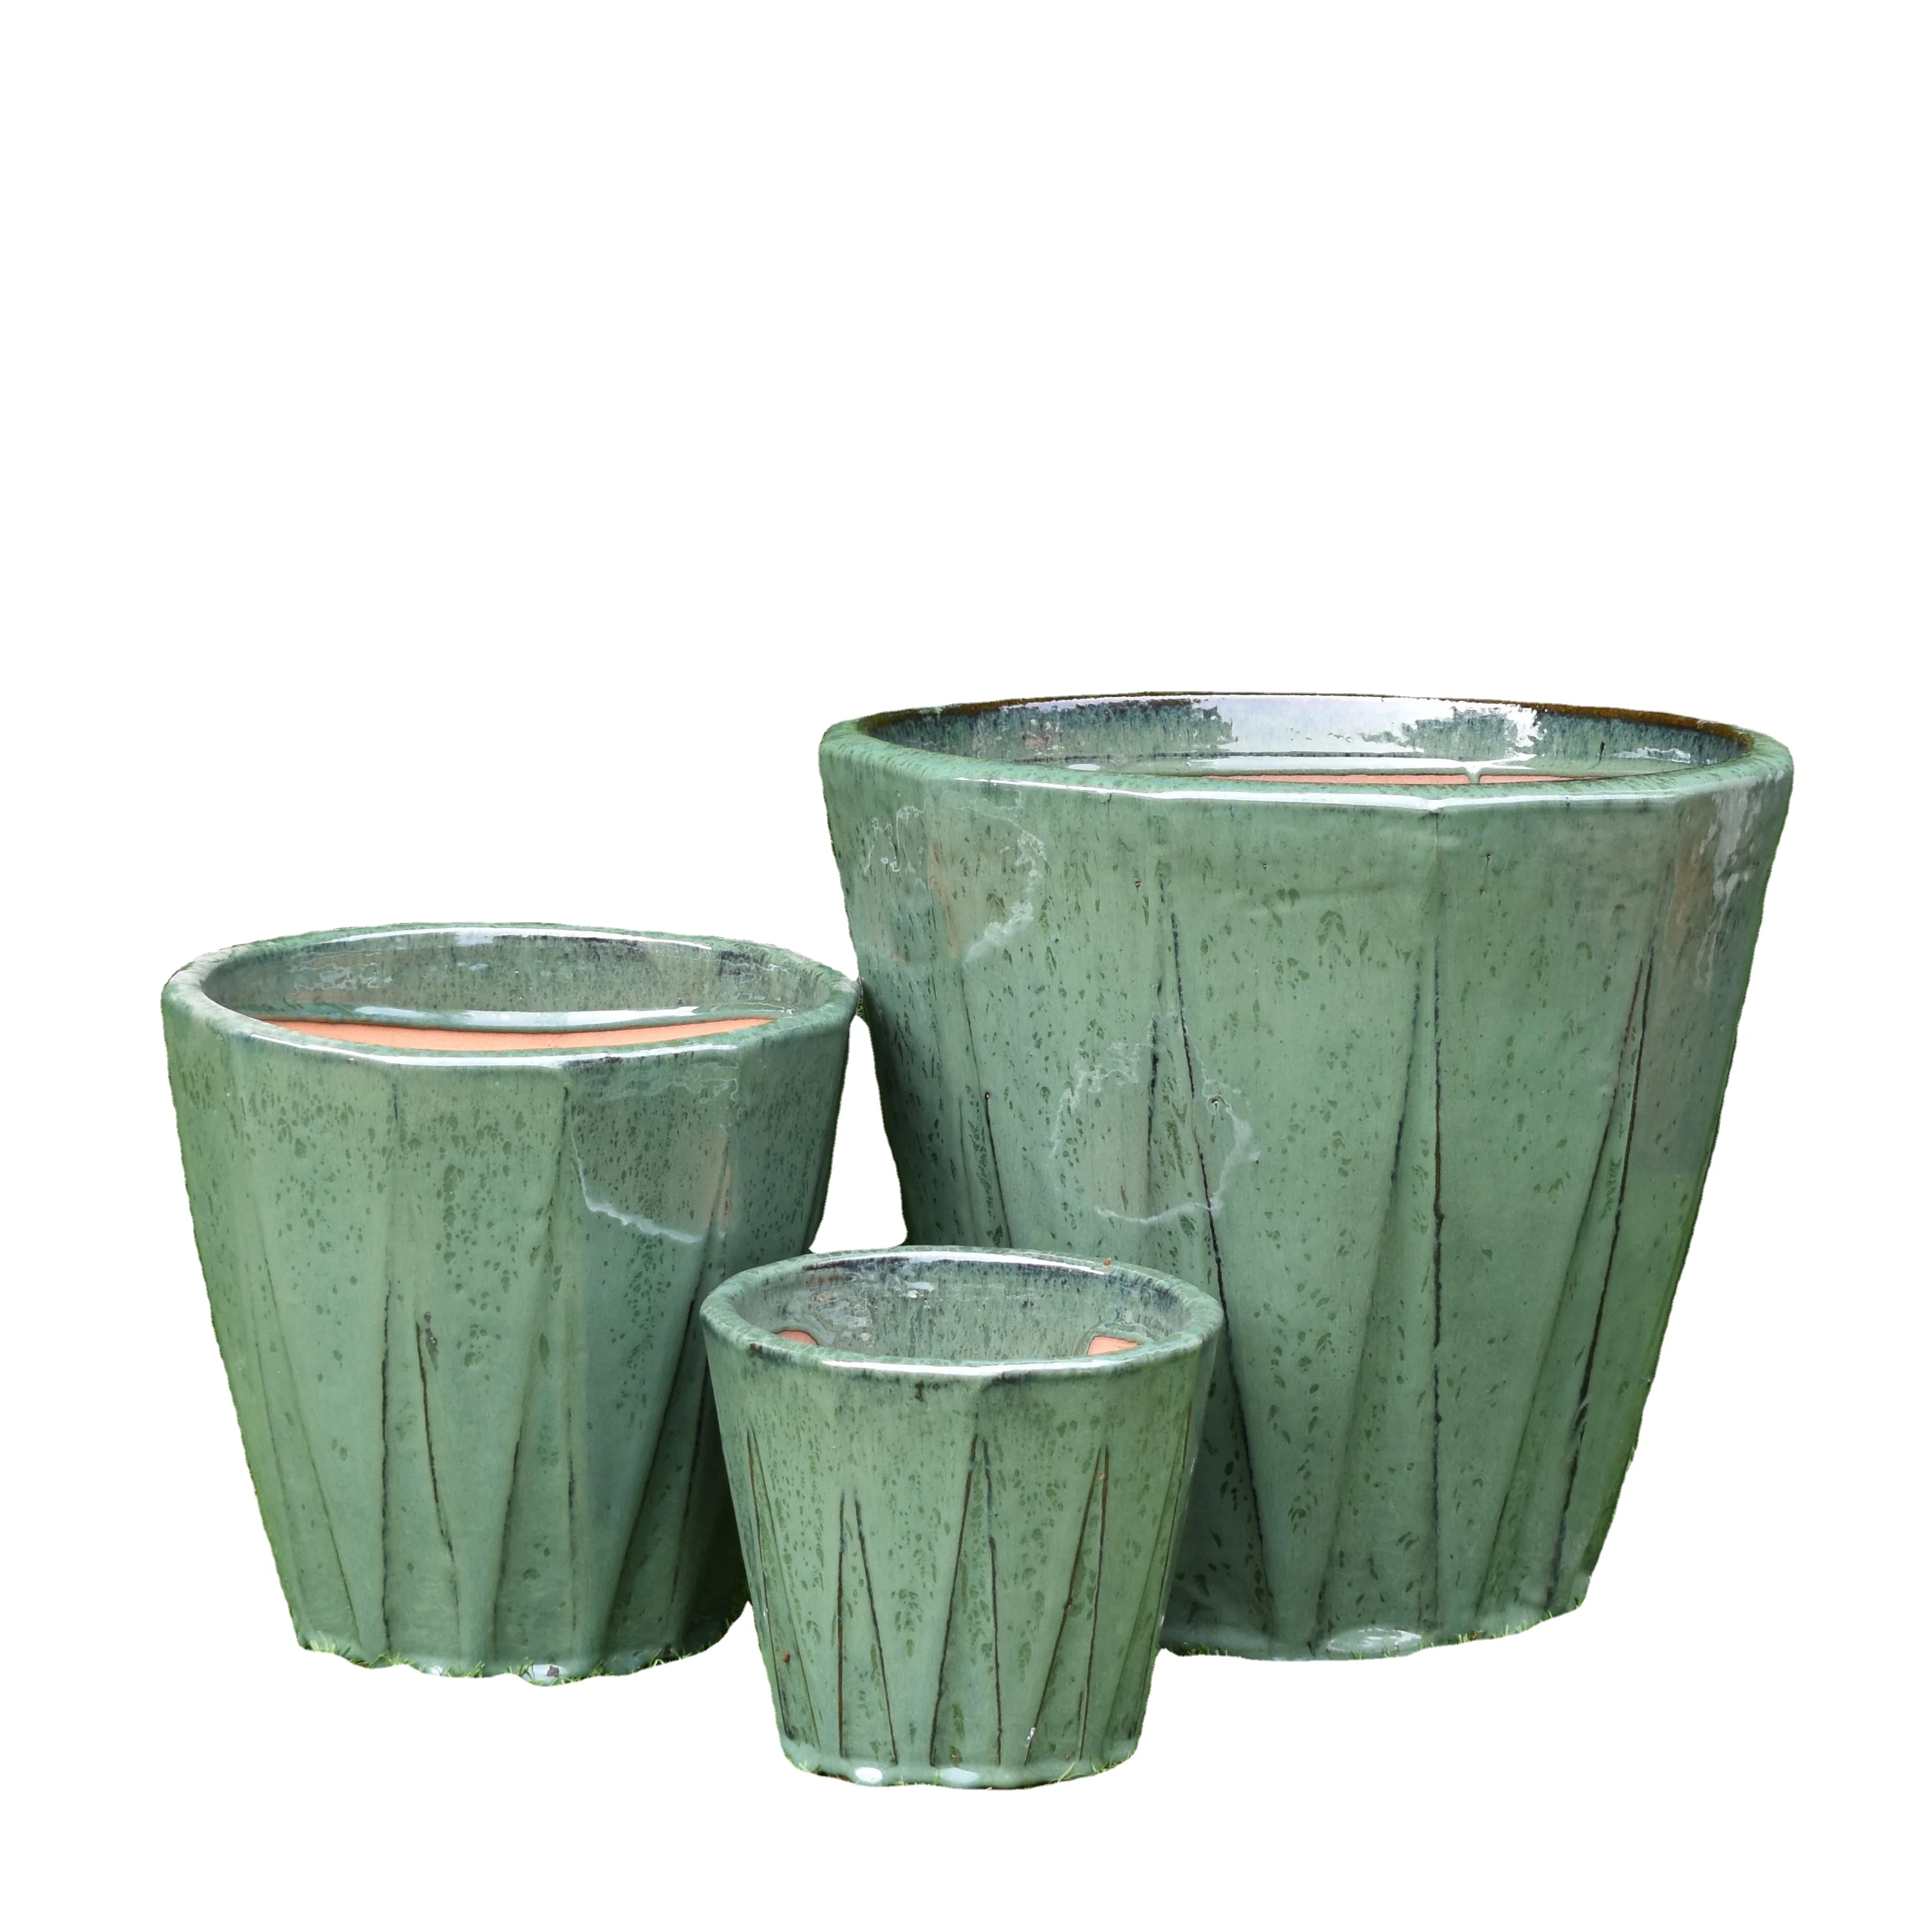 Ceramic Flower Pot Planters Flowing Glaze Plant Container Planter Bonsai Pot Large Atlantic Pot pottery glaze plant planter